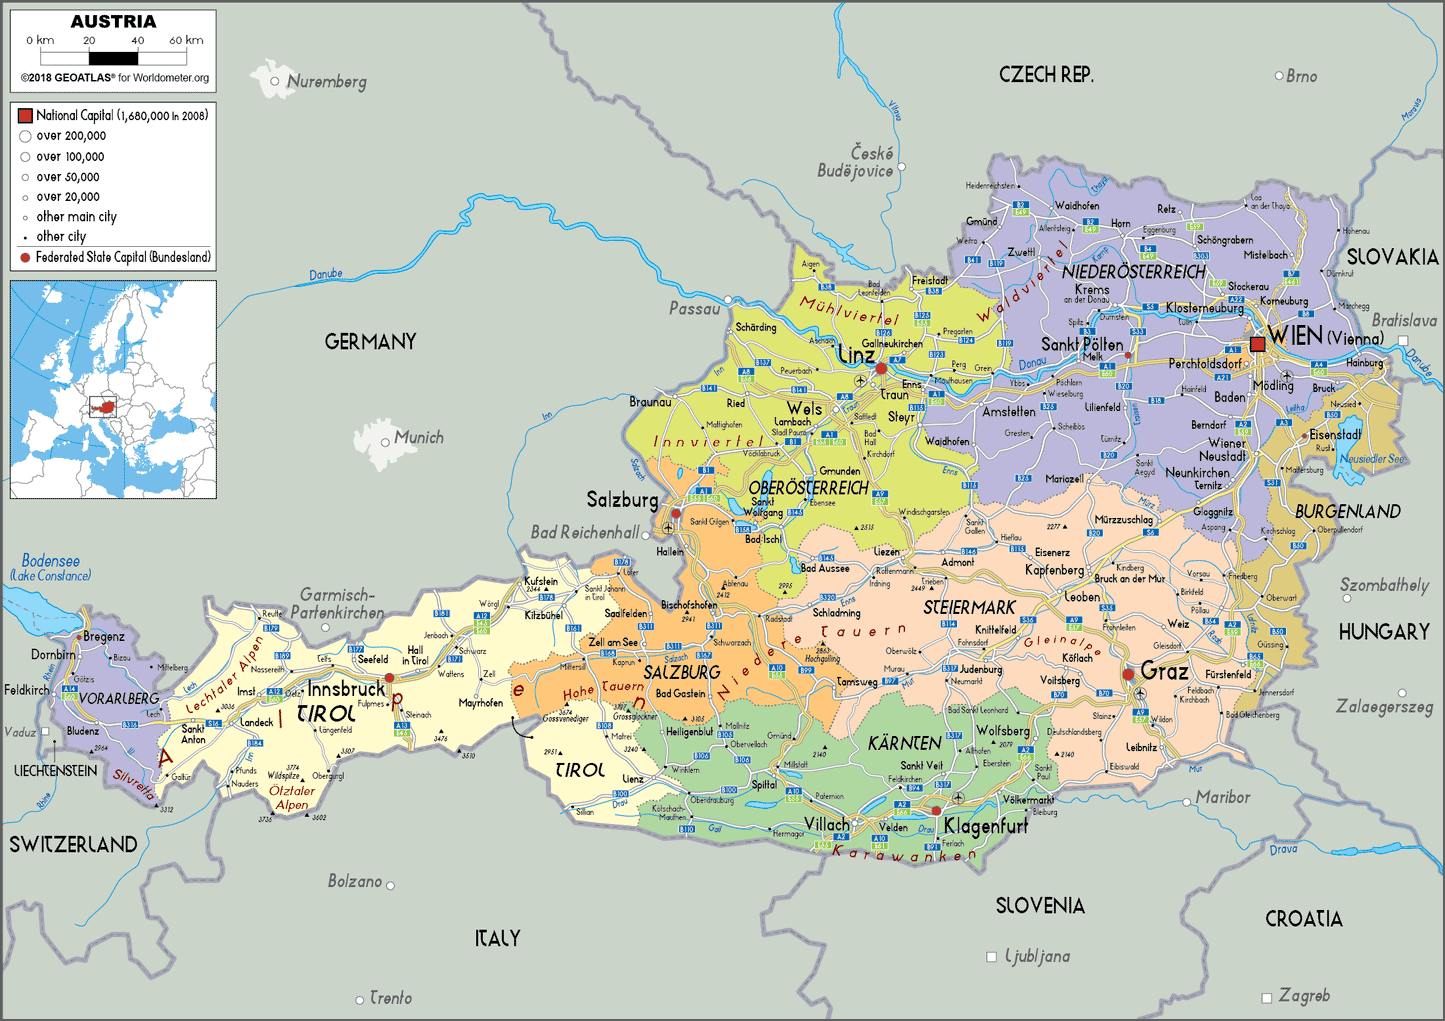 Overzicht regio's in Oostenrijk